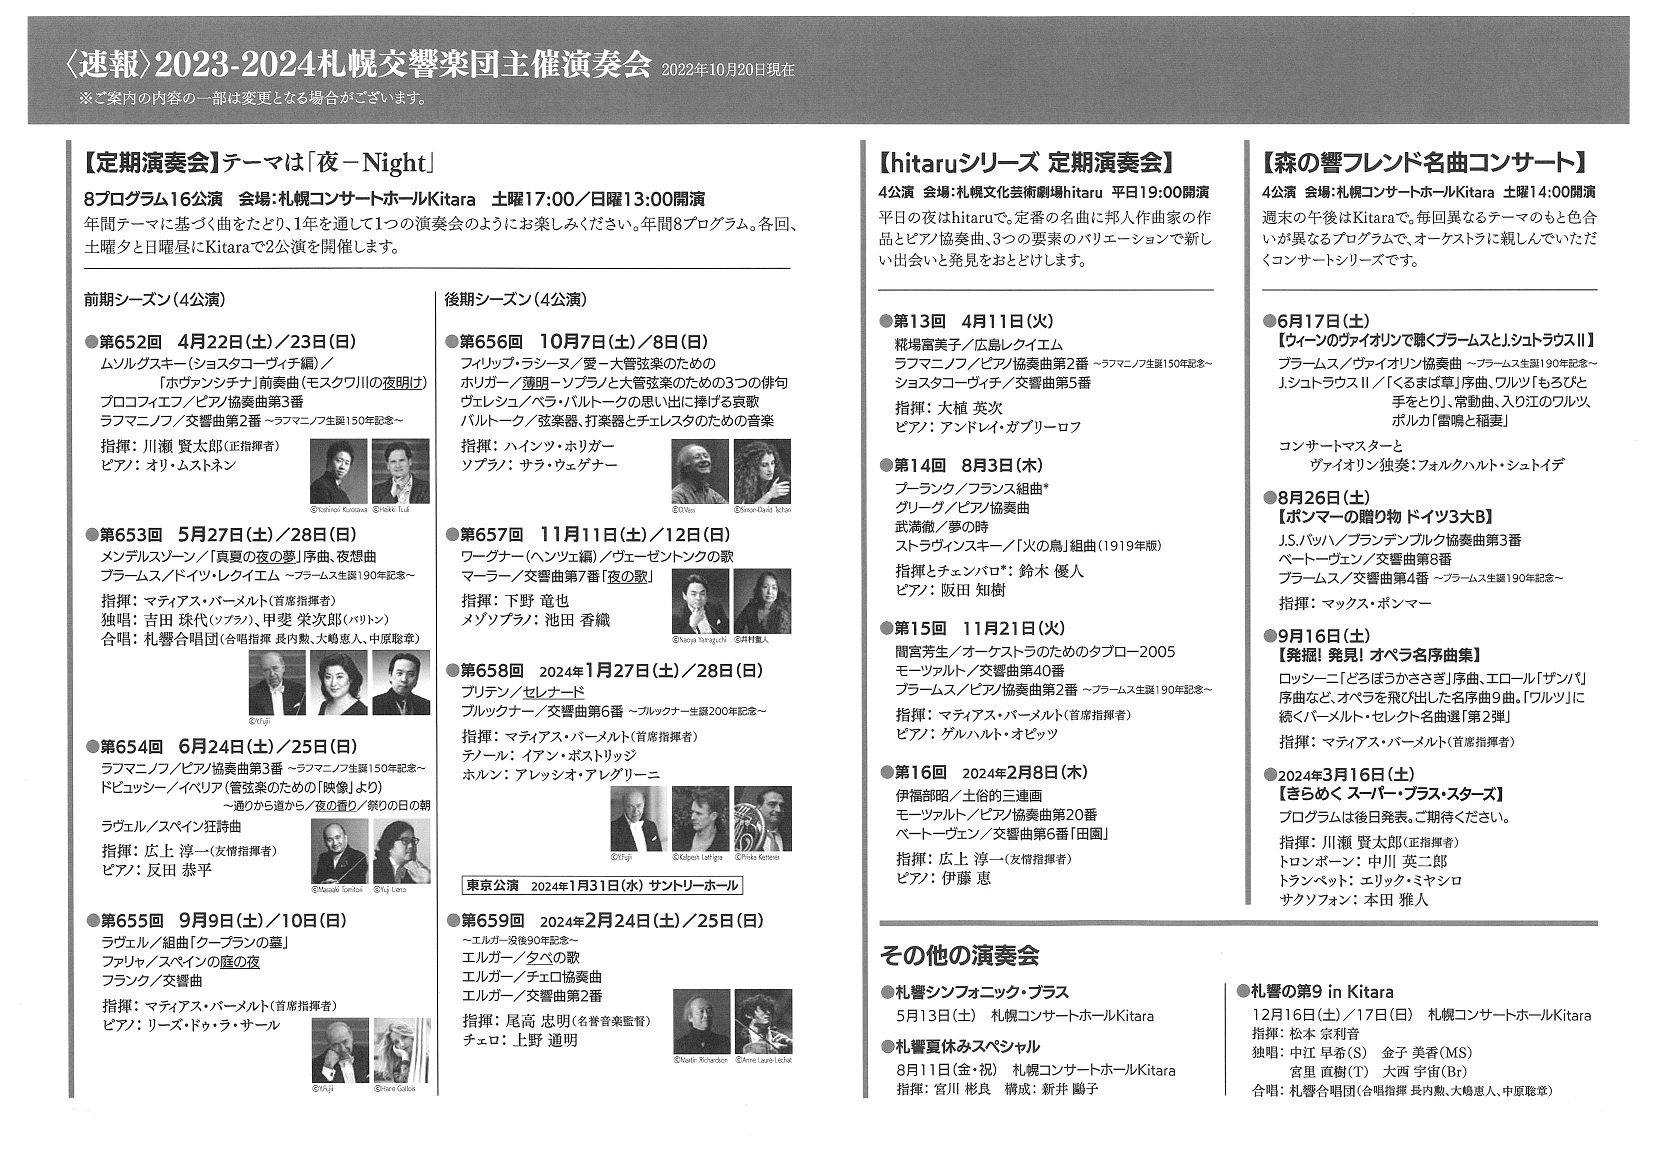 【速報】2023-2024シーズン『札幌交響楽団主催演奏会』ラインナップ発表